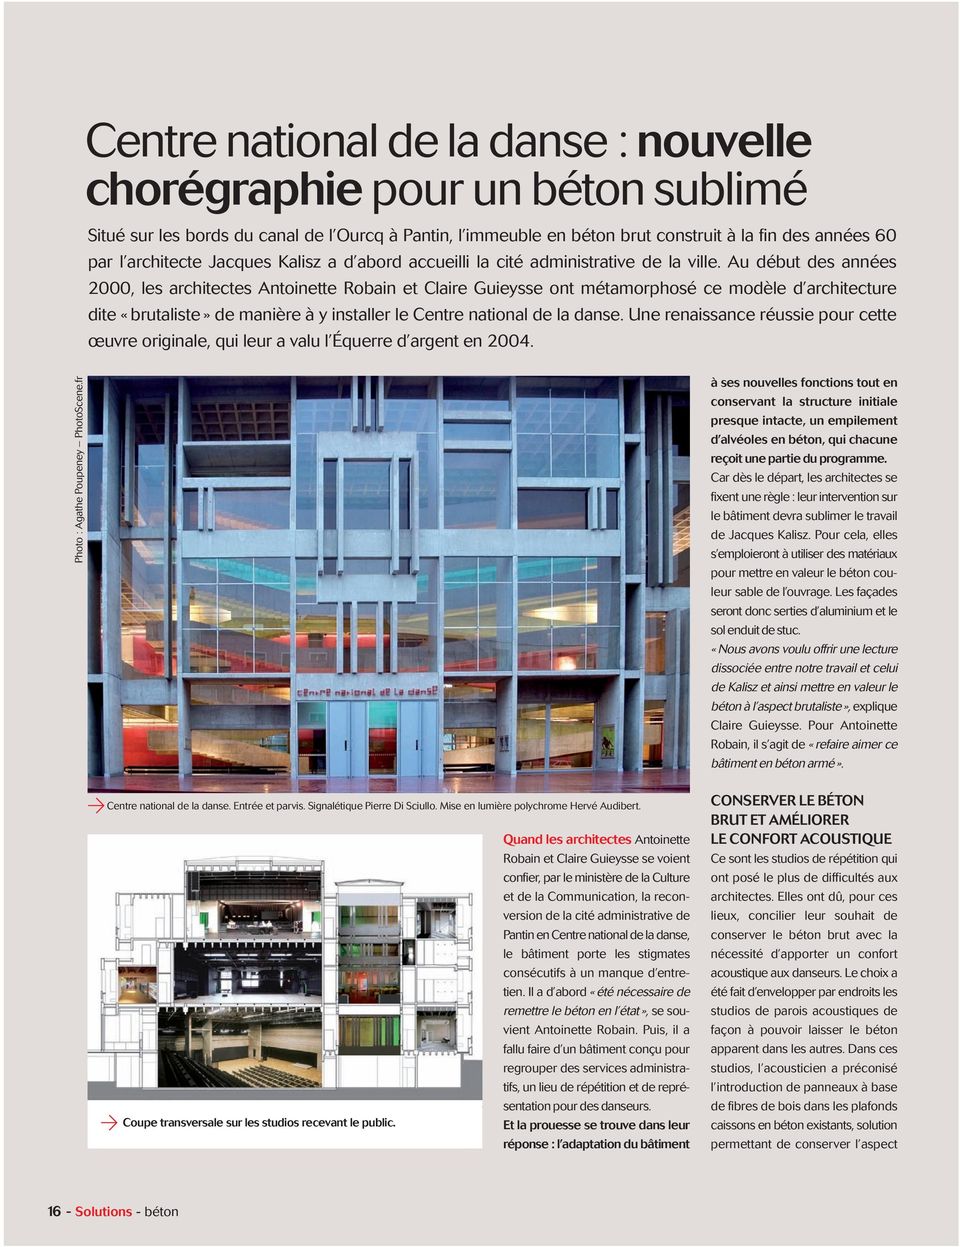 Au début des années 2000, les architectes Antoinette Robain et Claire Guieysse ont métamorphosé ce modèle d architecture dite «brutaliste» de manière à y installer le Centre national de la danse.